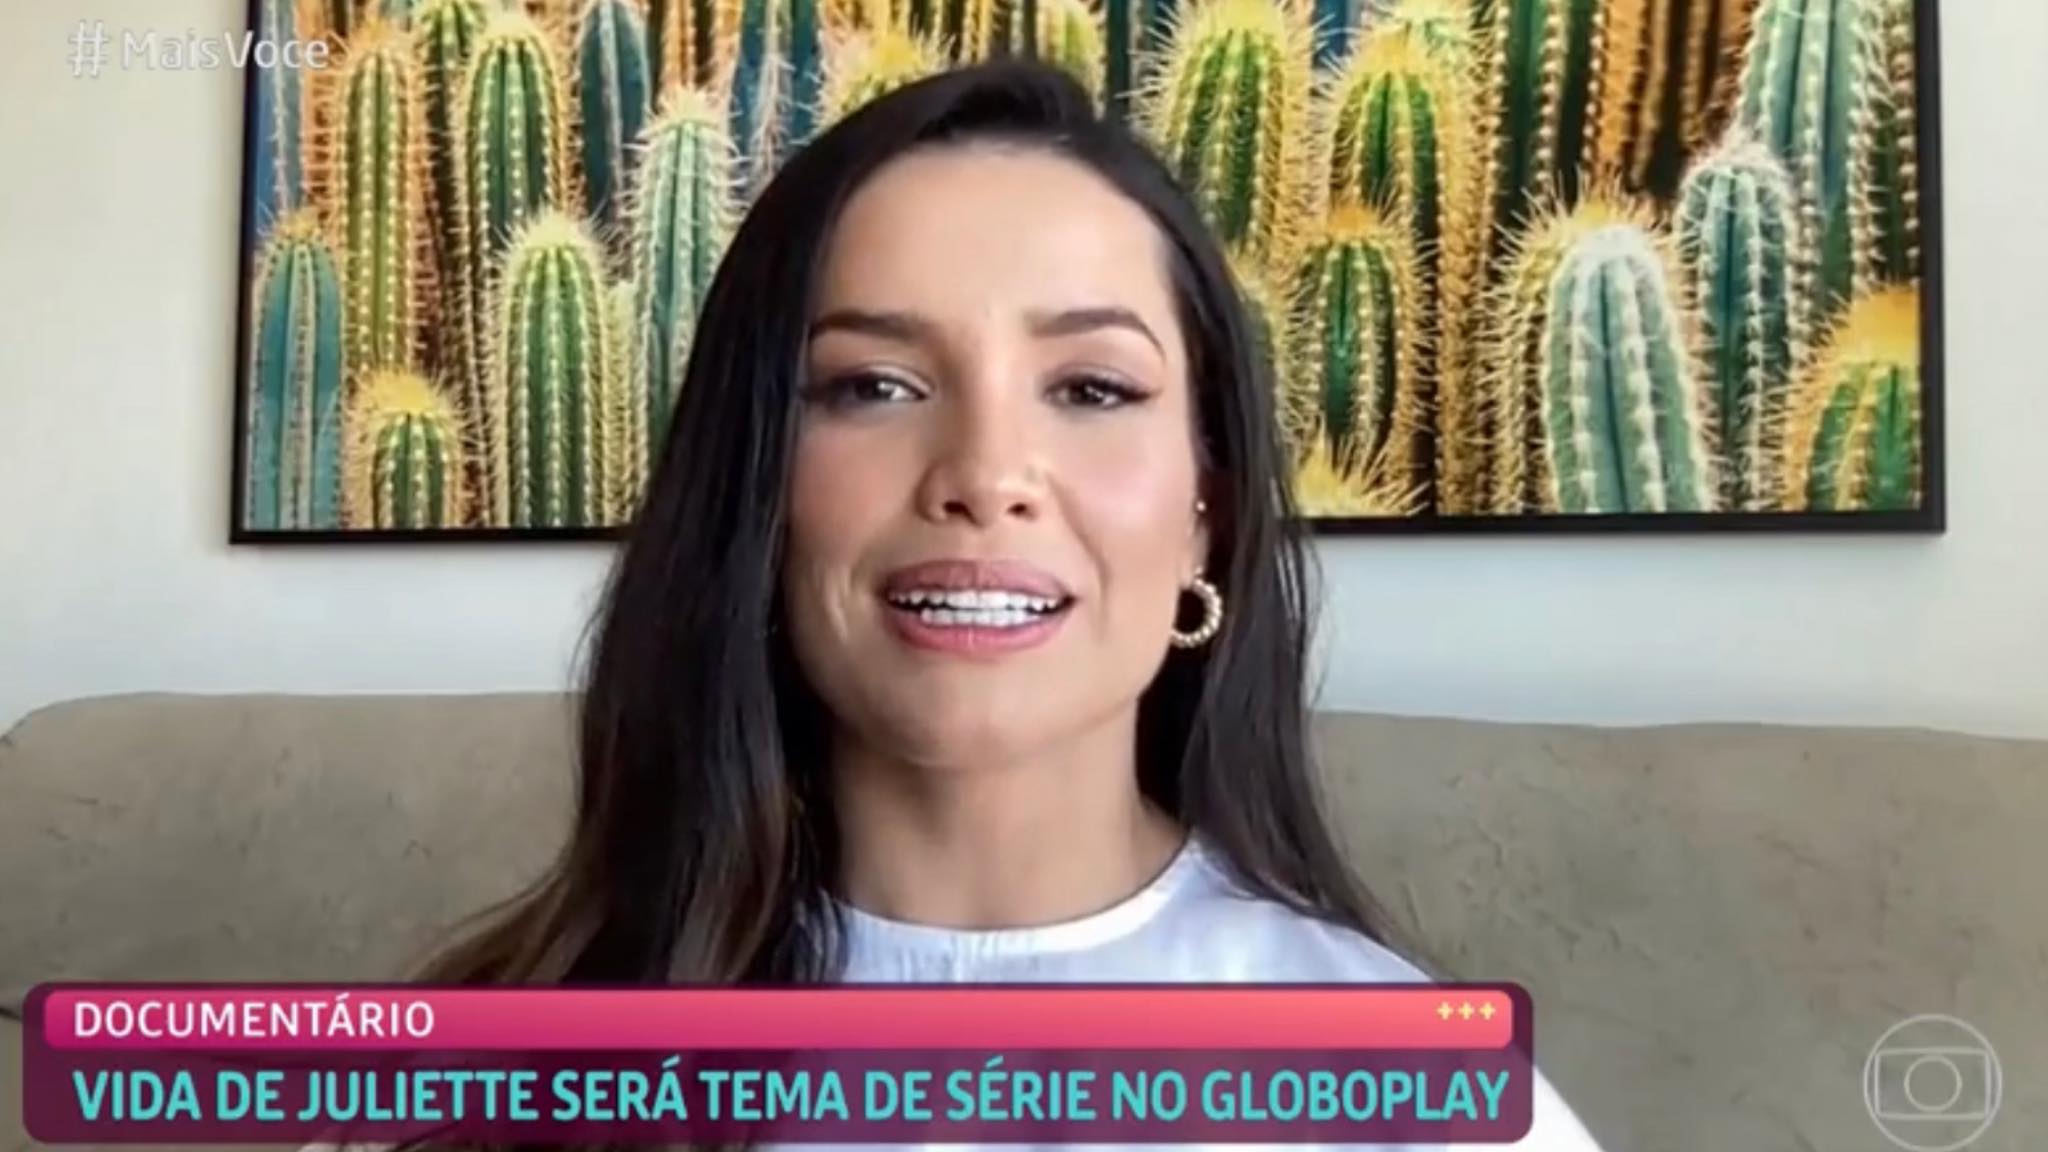 A embaixadora do Globoplay anuncia série biográfica na plataforma (imagem: reprodução/ Globo)